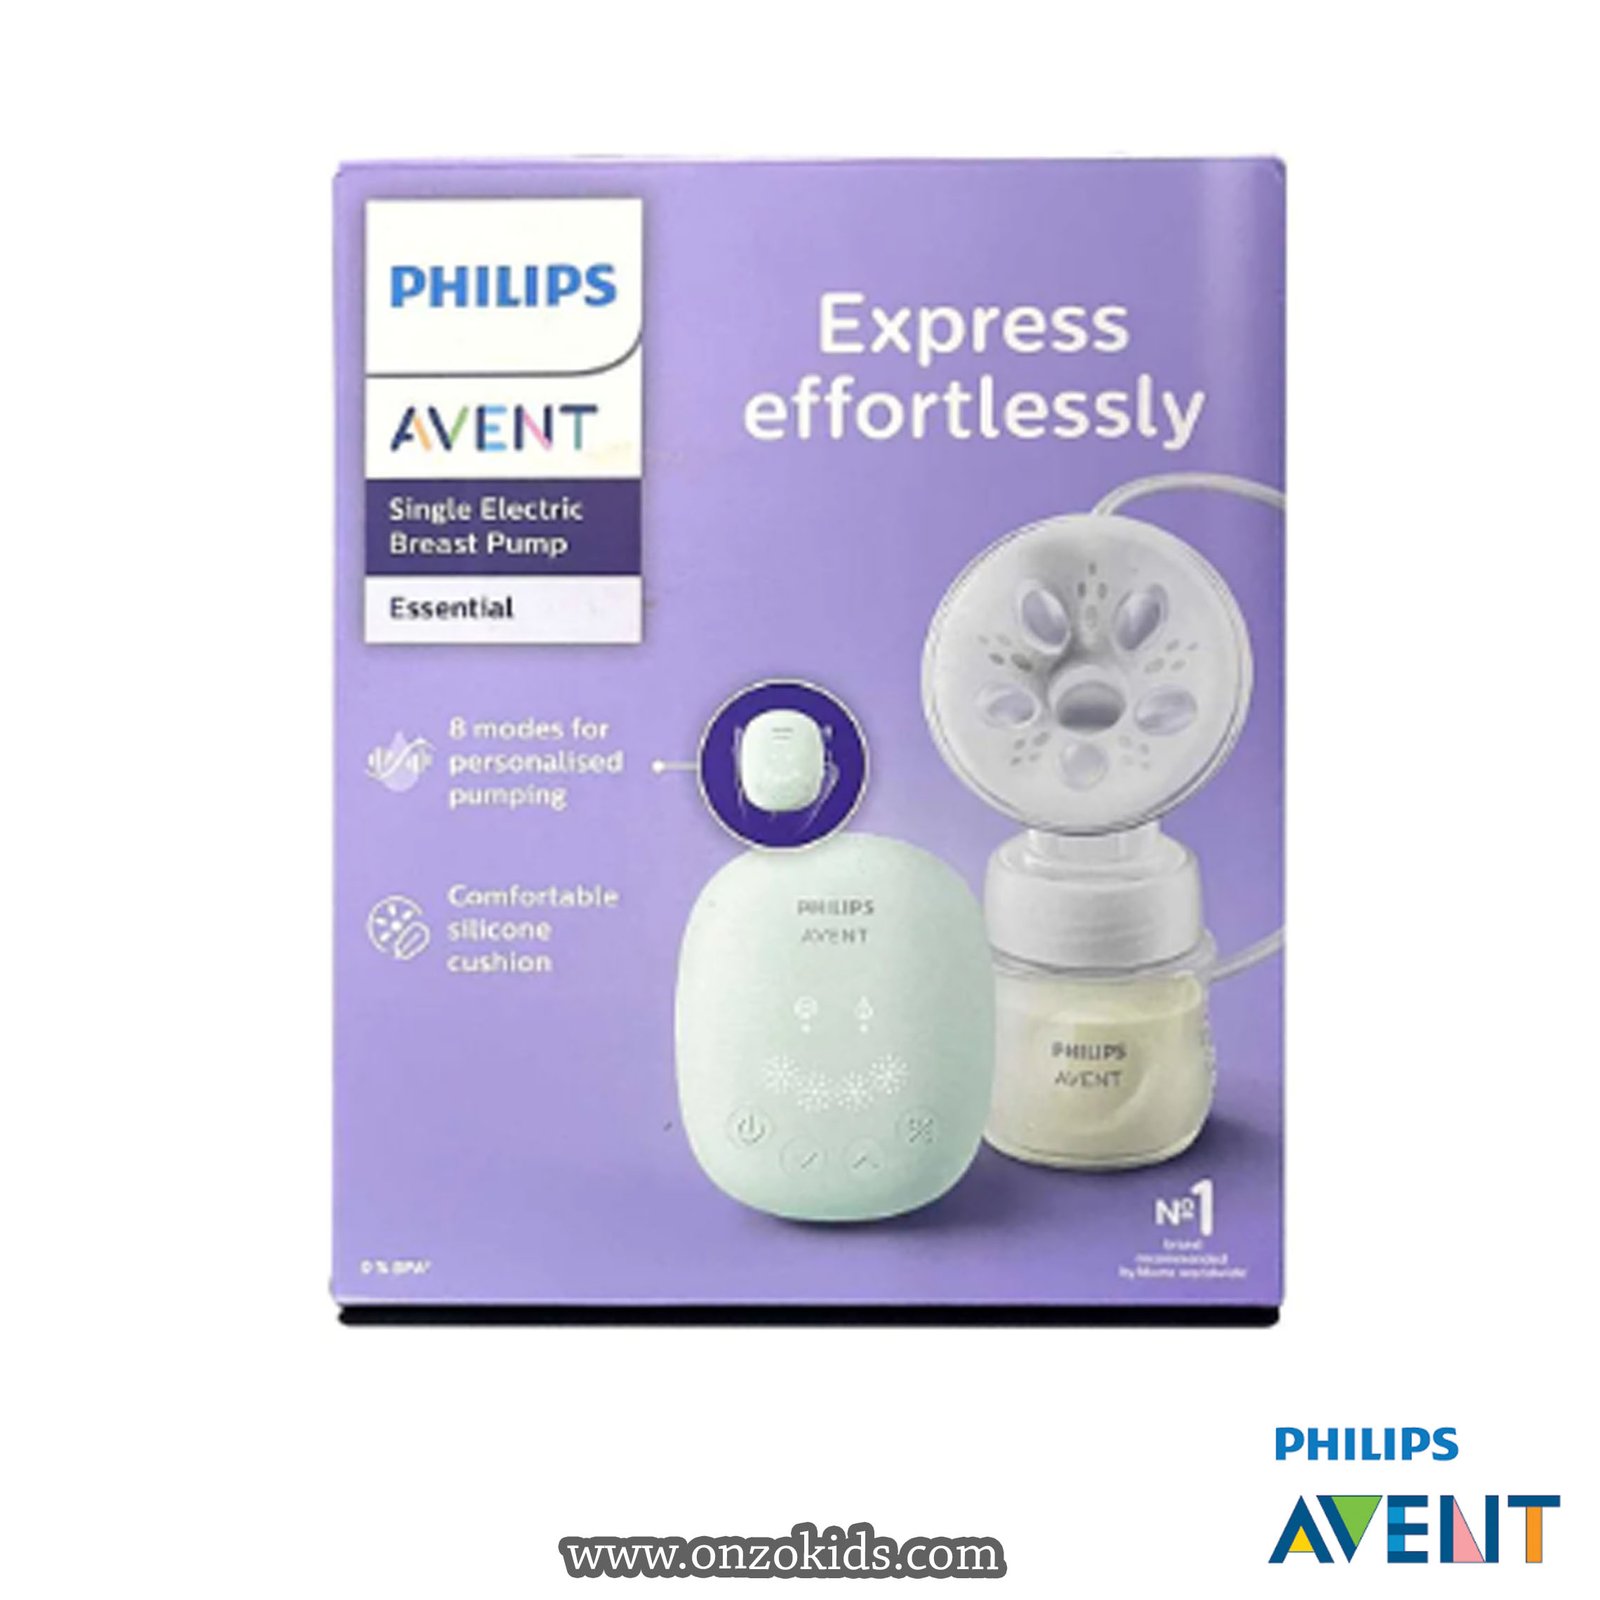 Tire lait électrique Avent Philips